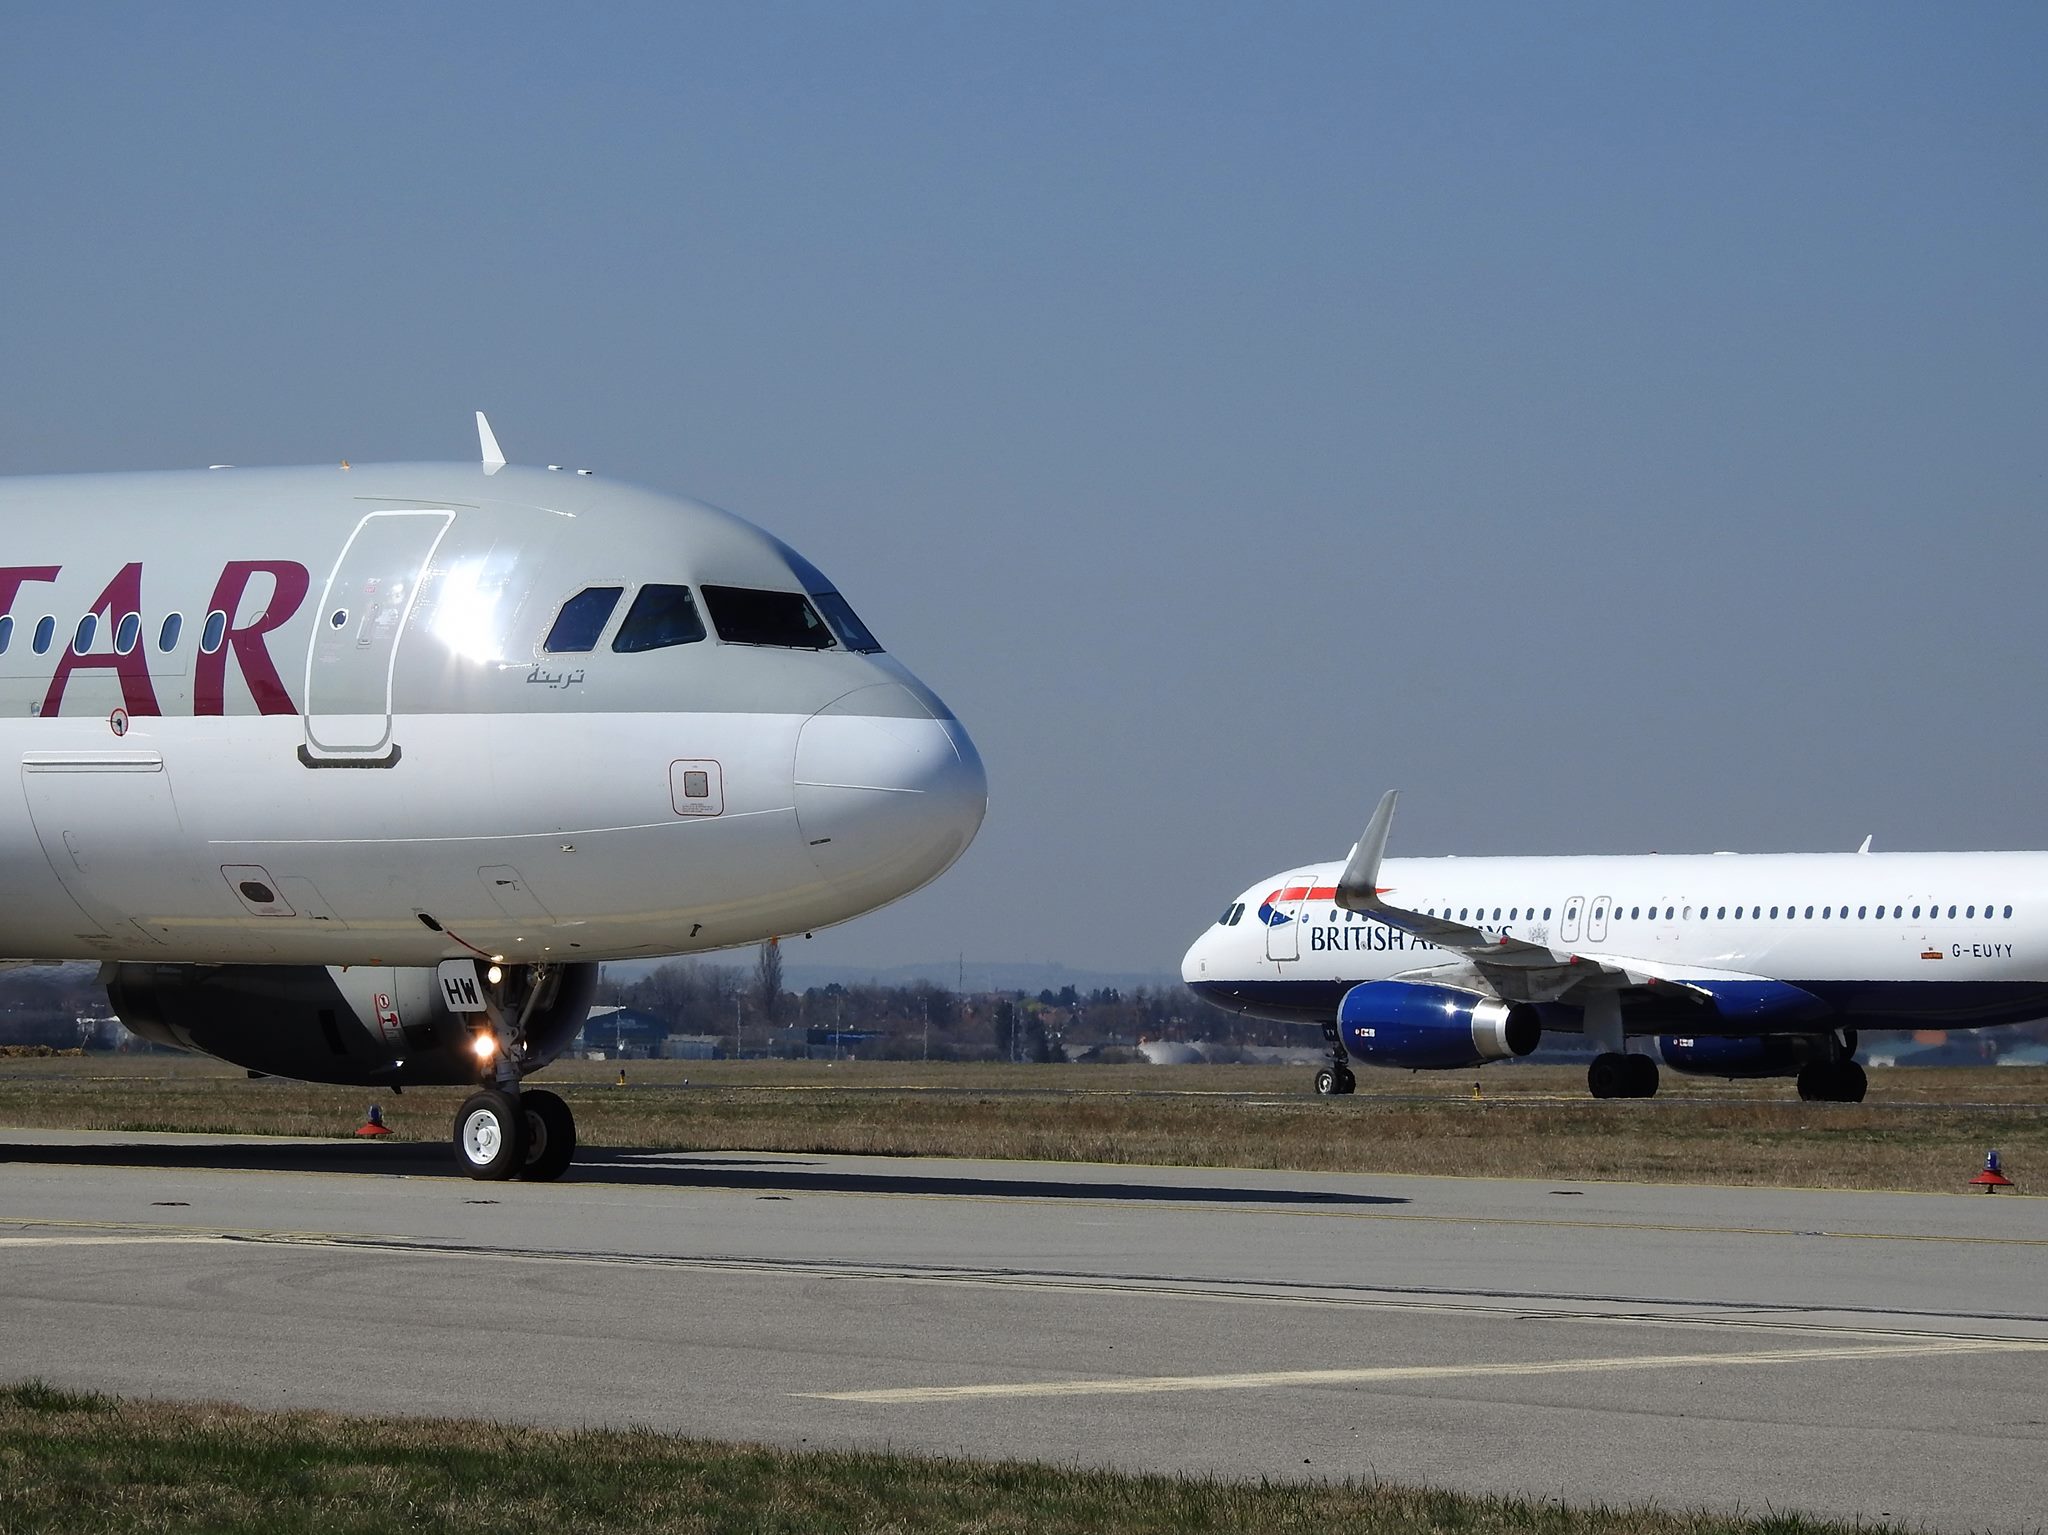 Mindkét légitársaság keskenytörzsű Airbus utasszállítókkal jár Budapestre